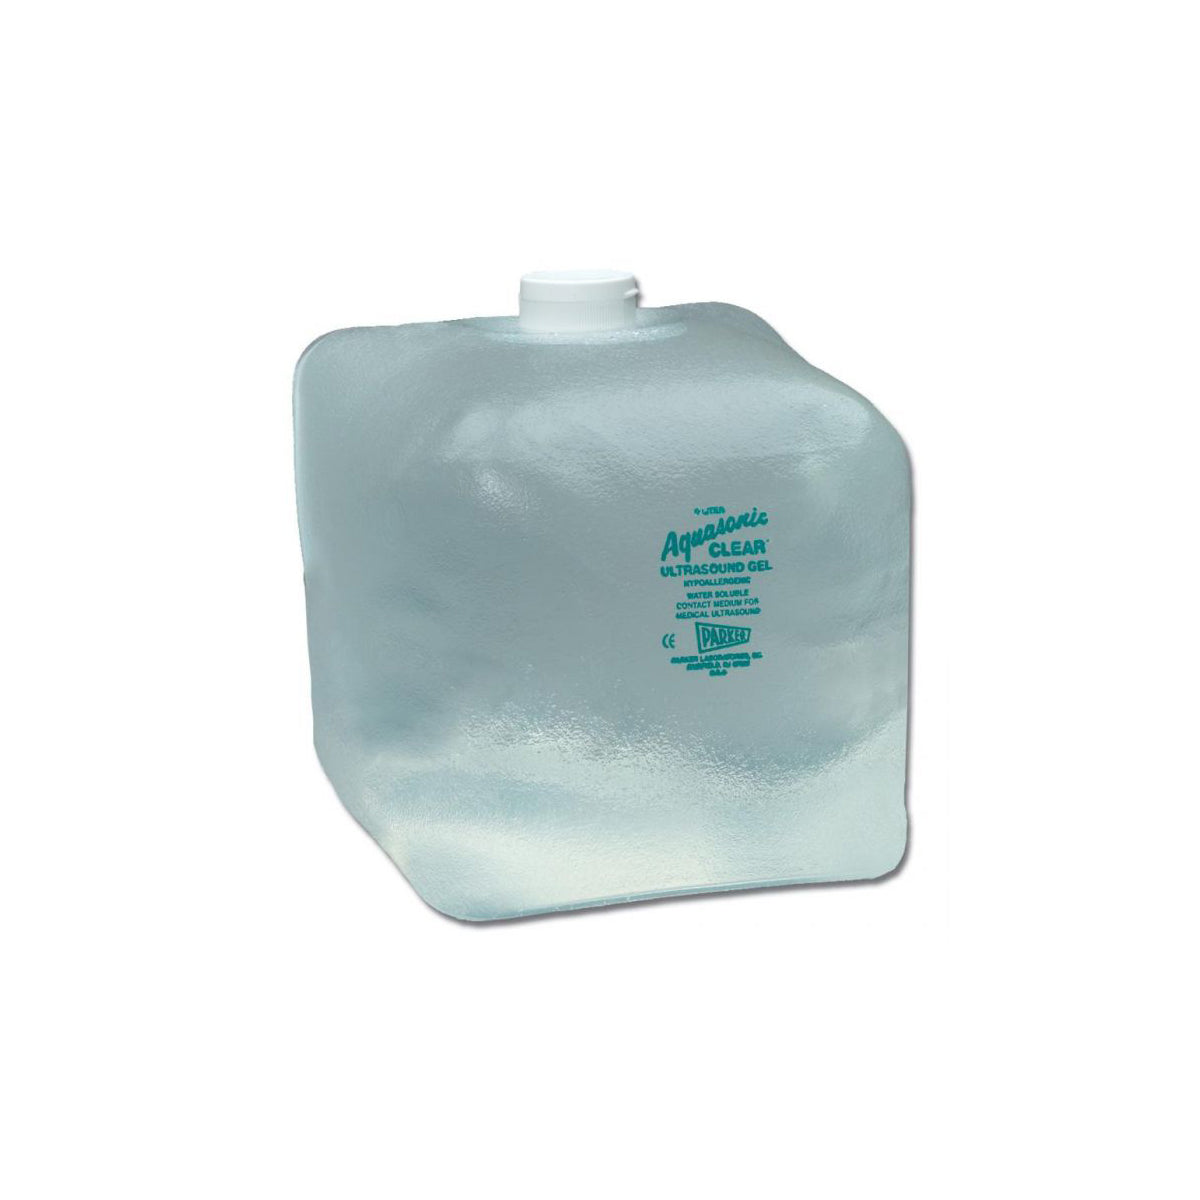 PARKER Aquasonic Clear gel incolore non stérile